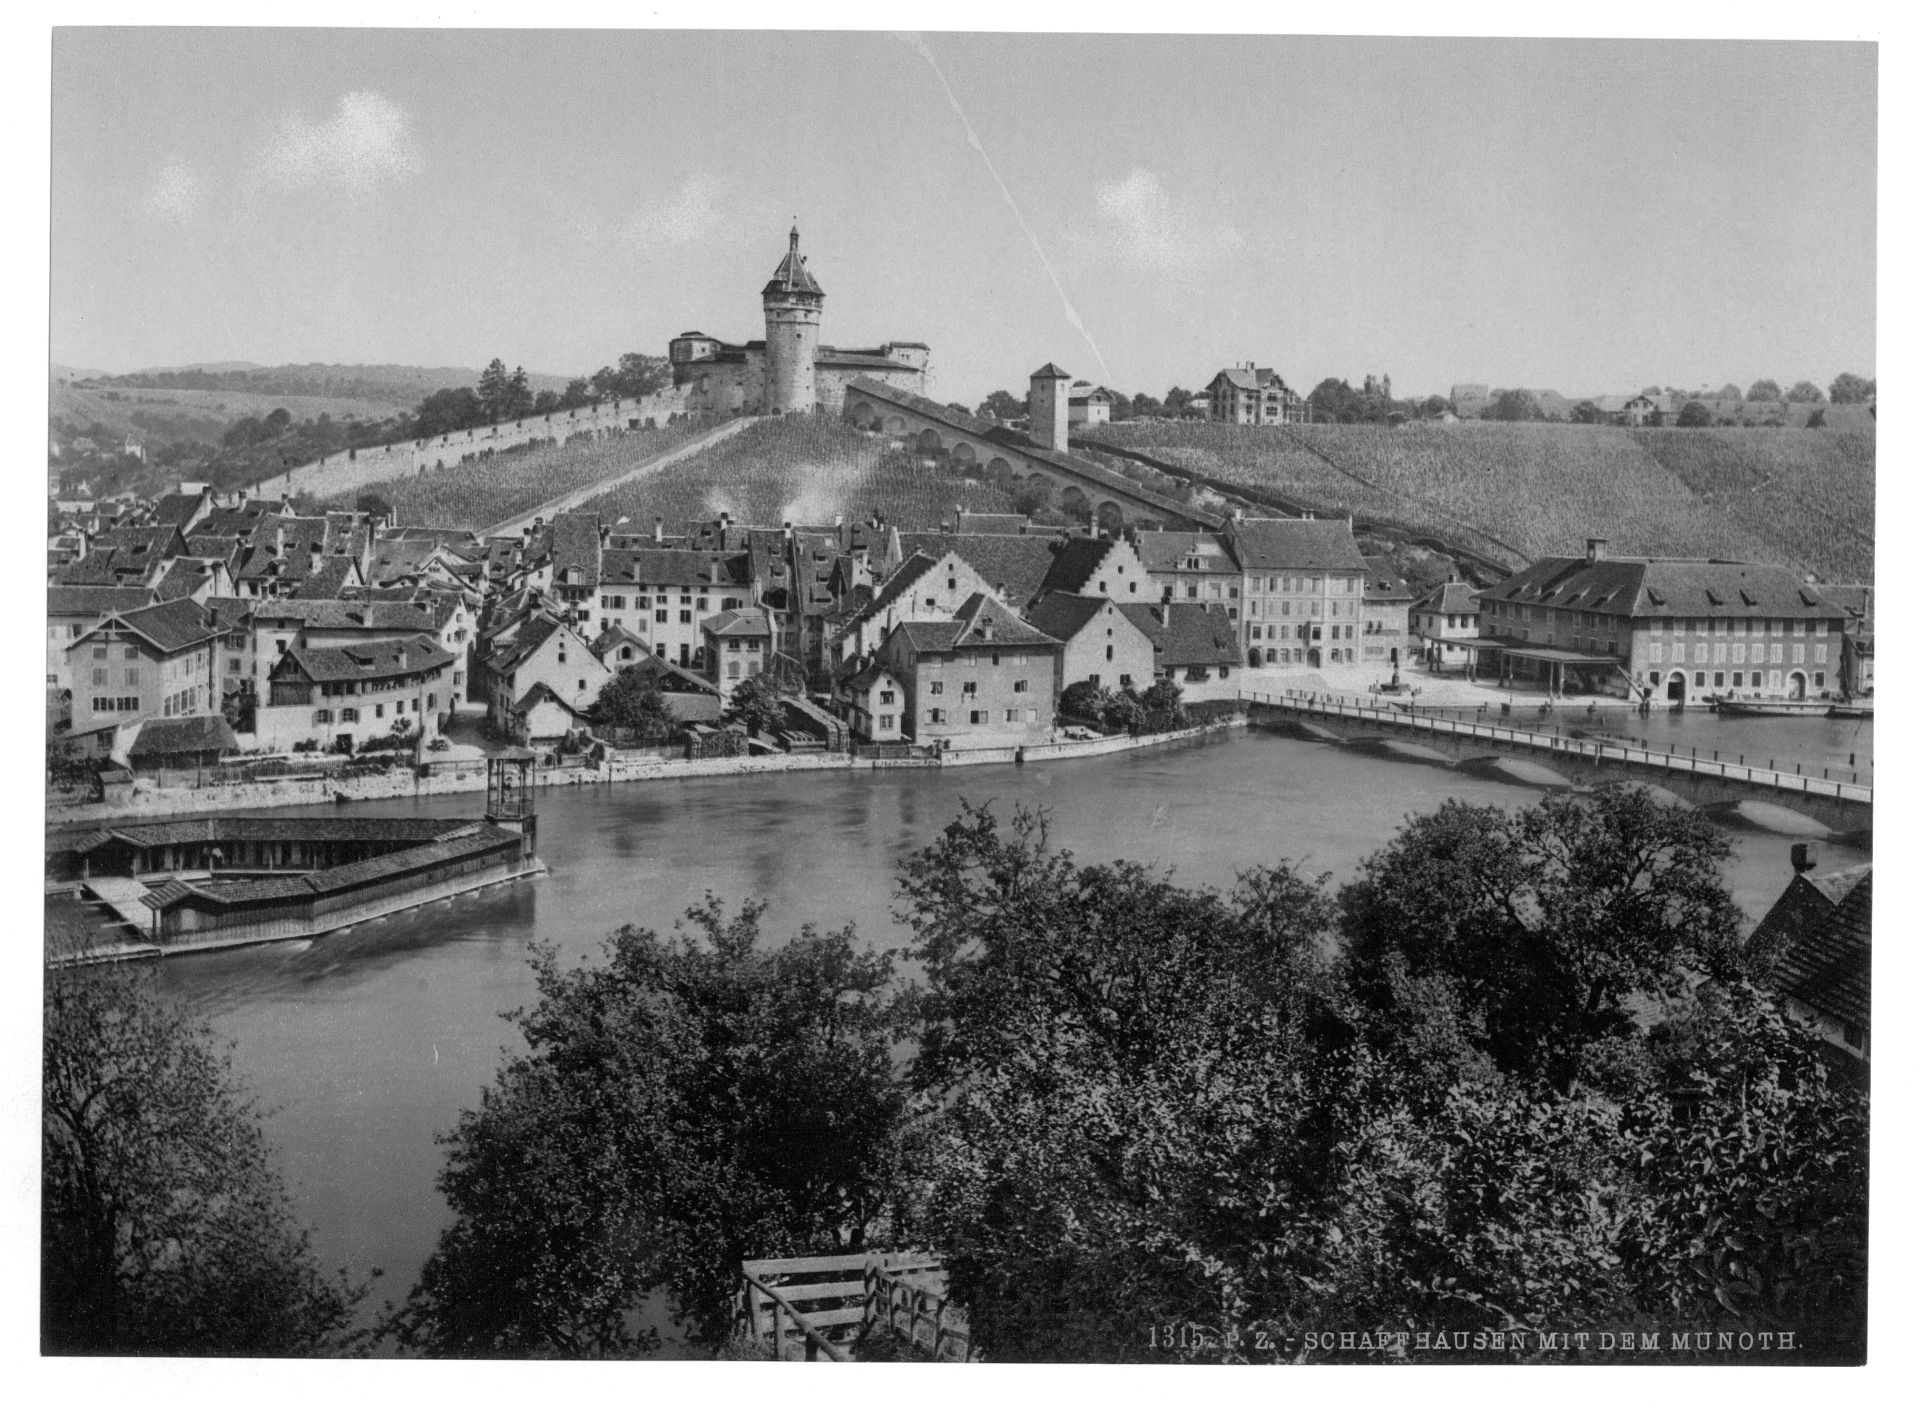 View of Schaffhausen, with the Munoth, Schaffhausen, Switzerland